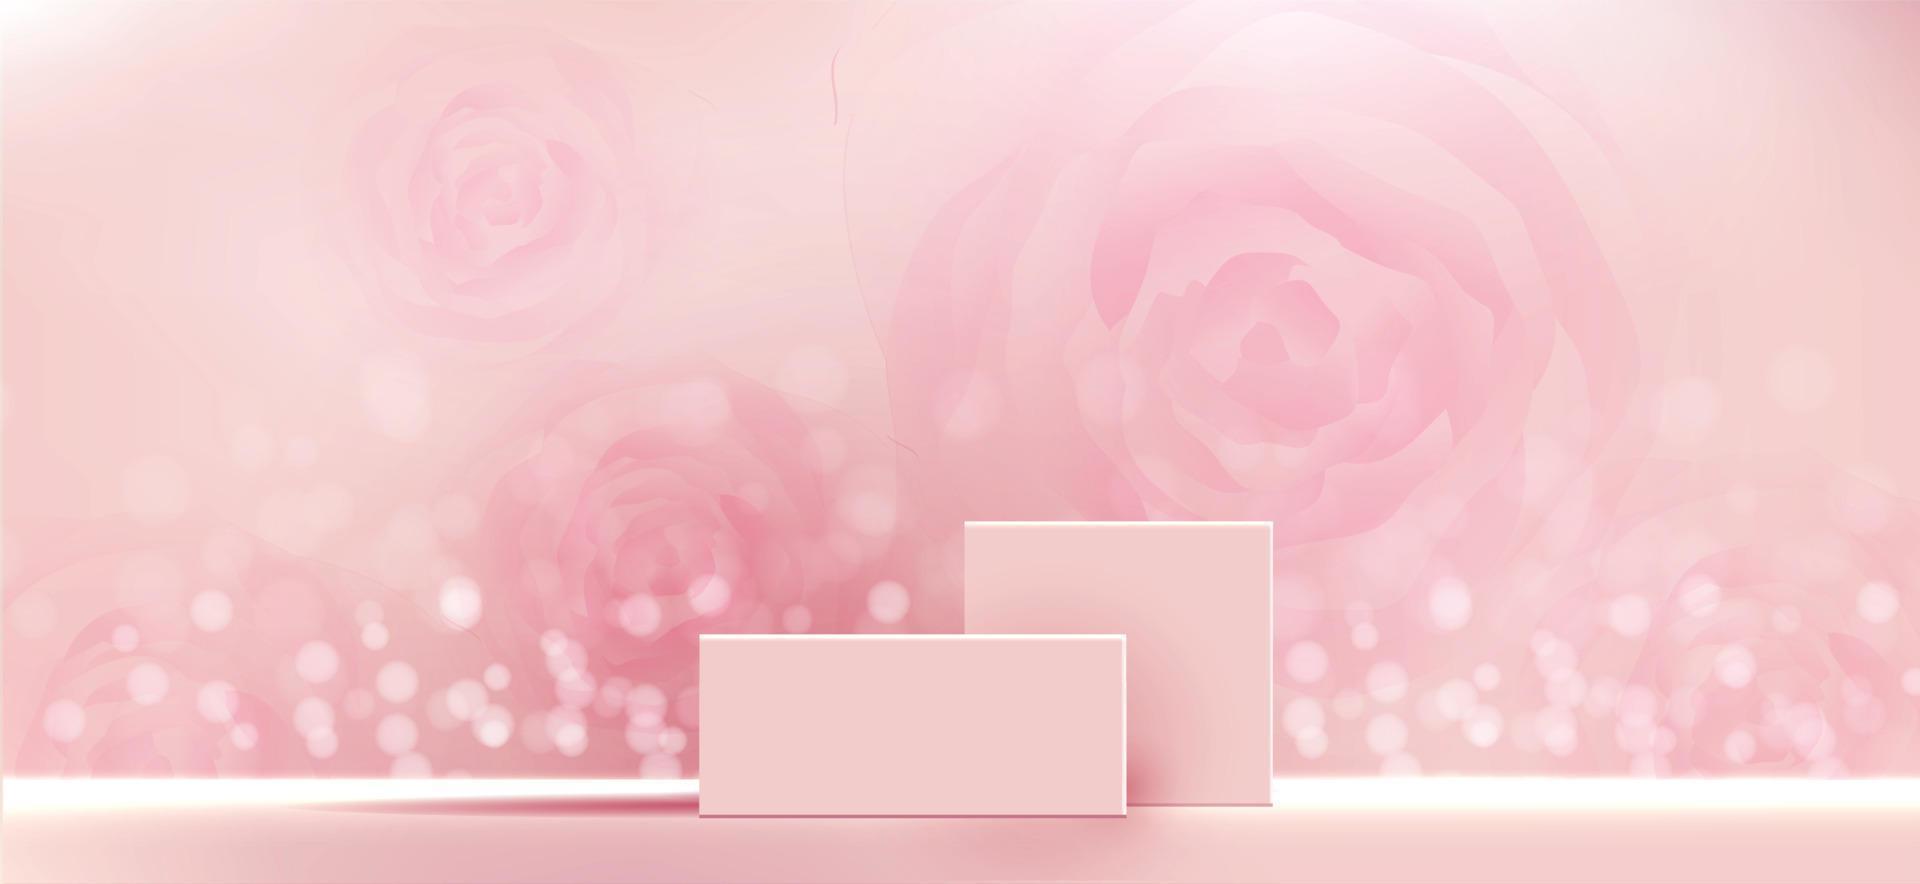 Fondo cosmético para presentación de productos, marcas y envases. Moldeado cuadrado de forma geométrica en el escenario del podio con sombra de fondo de partículas de brillo rosa. diseño vectorial. vector